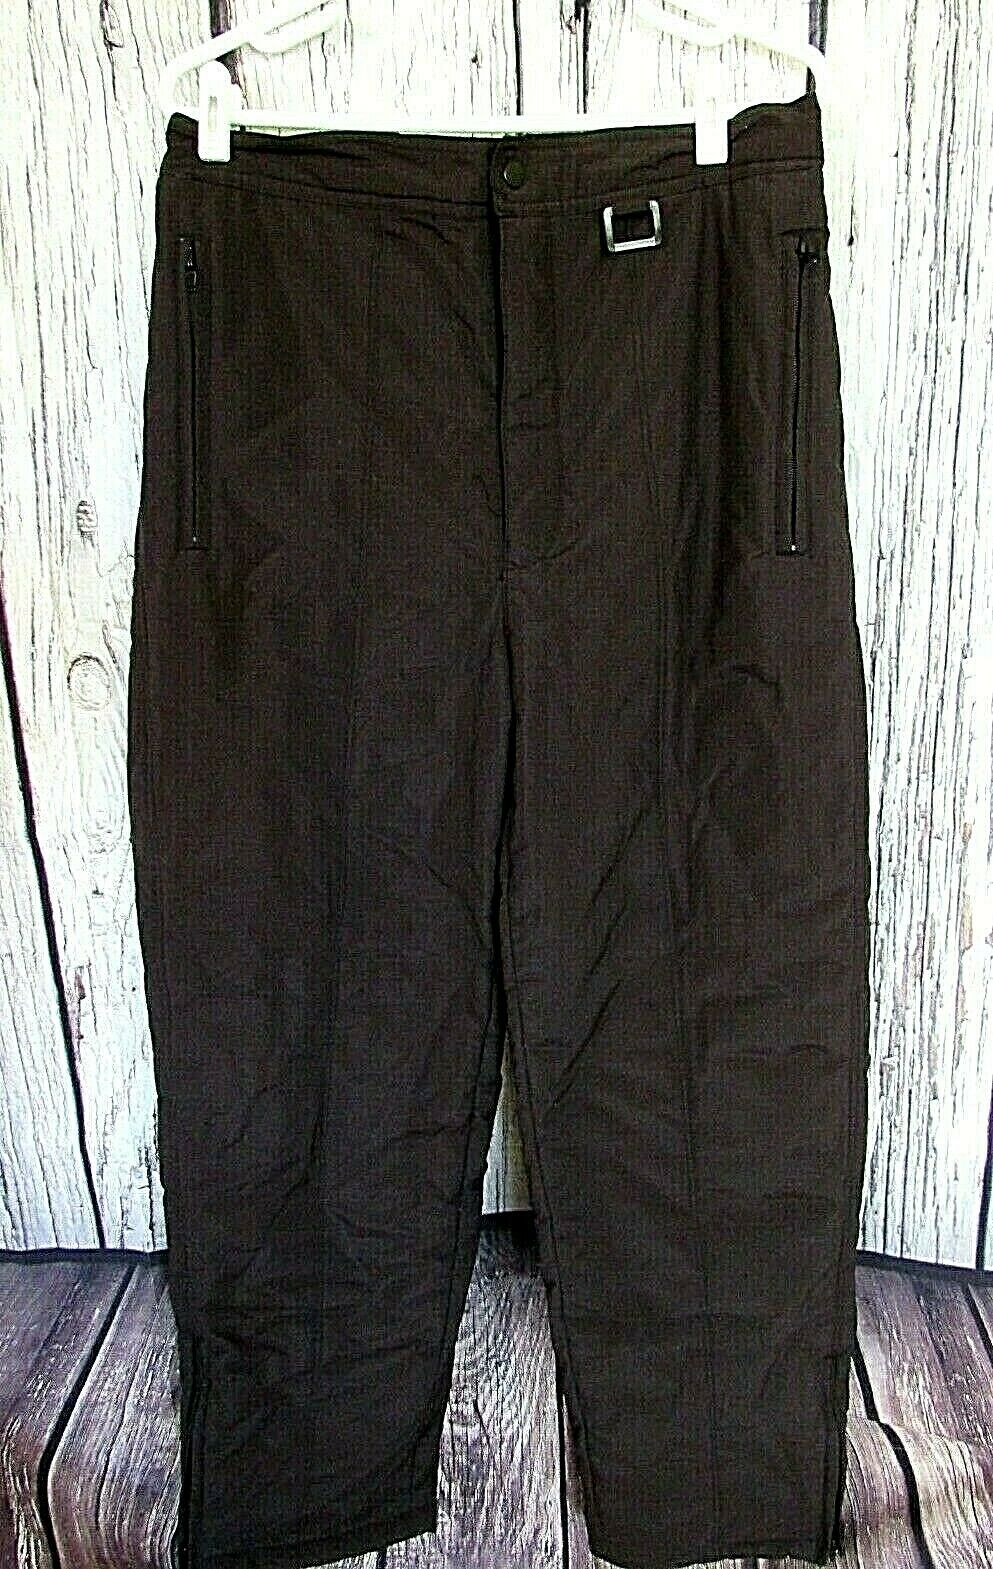 Chalet Ski Wear Men’s Pants Size Xl Zip Safe Pockets Solid Black